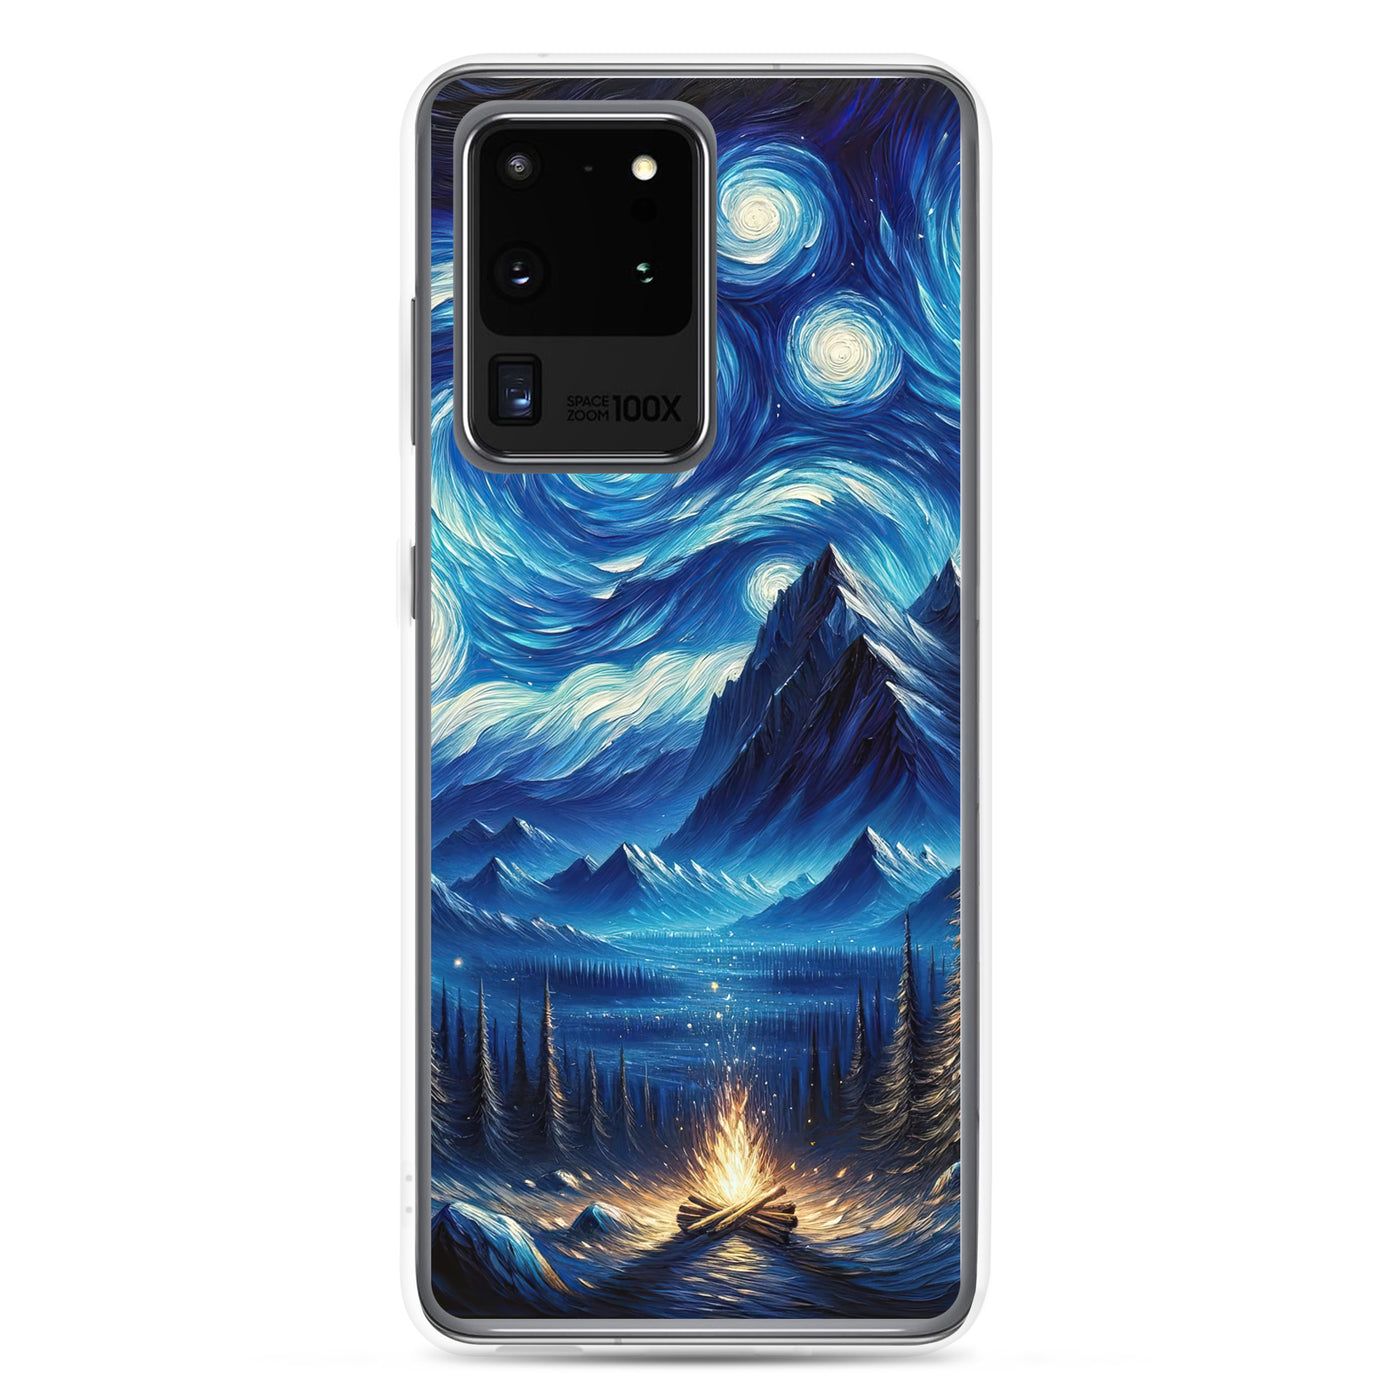 Sternennacht-Stil Ölgemälde der Alpen, himmlische Wirbelmuster - Samsung Schutzhülle (durchsichtig) berge xxx yyy zzz Samsung Galaxy S20 Ultra